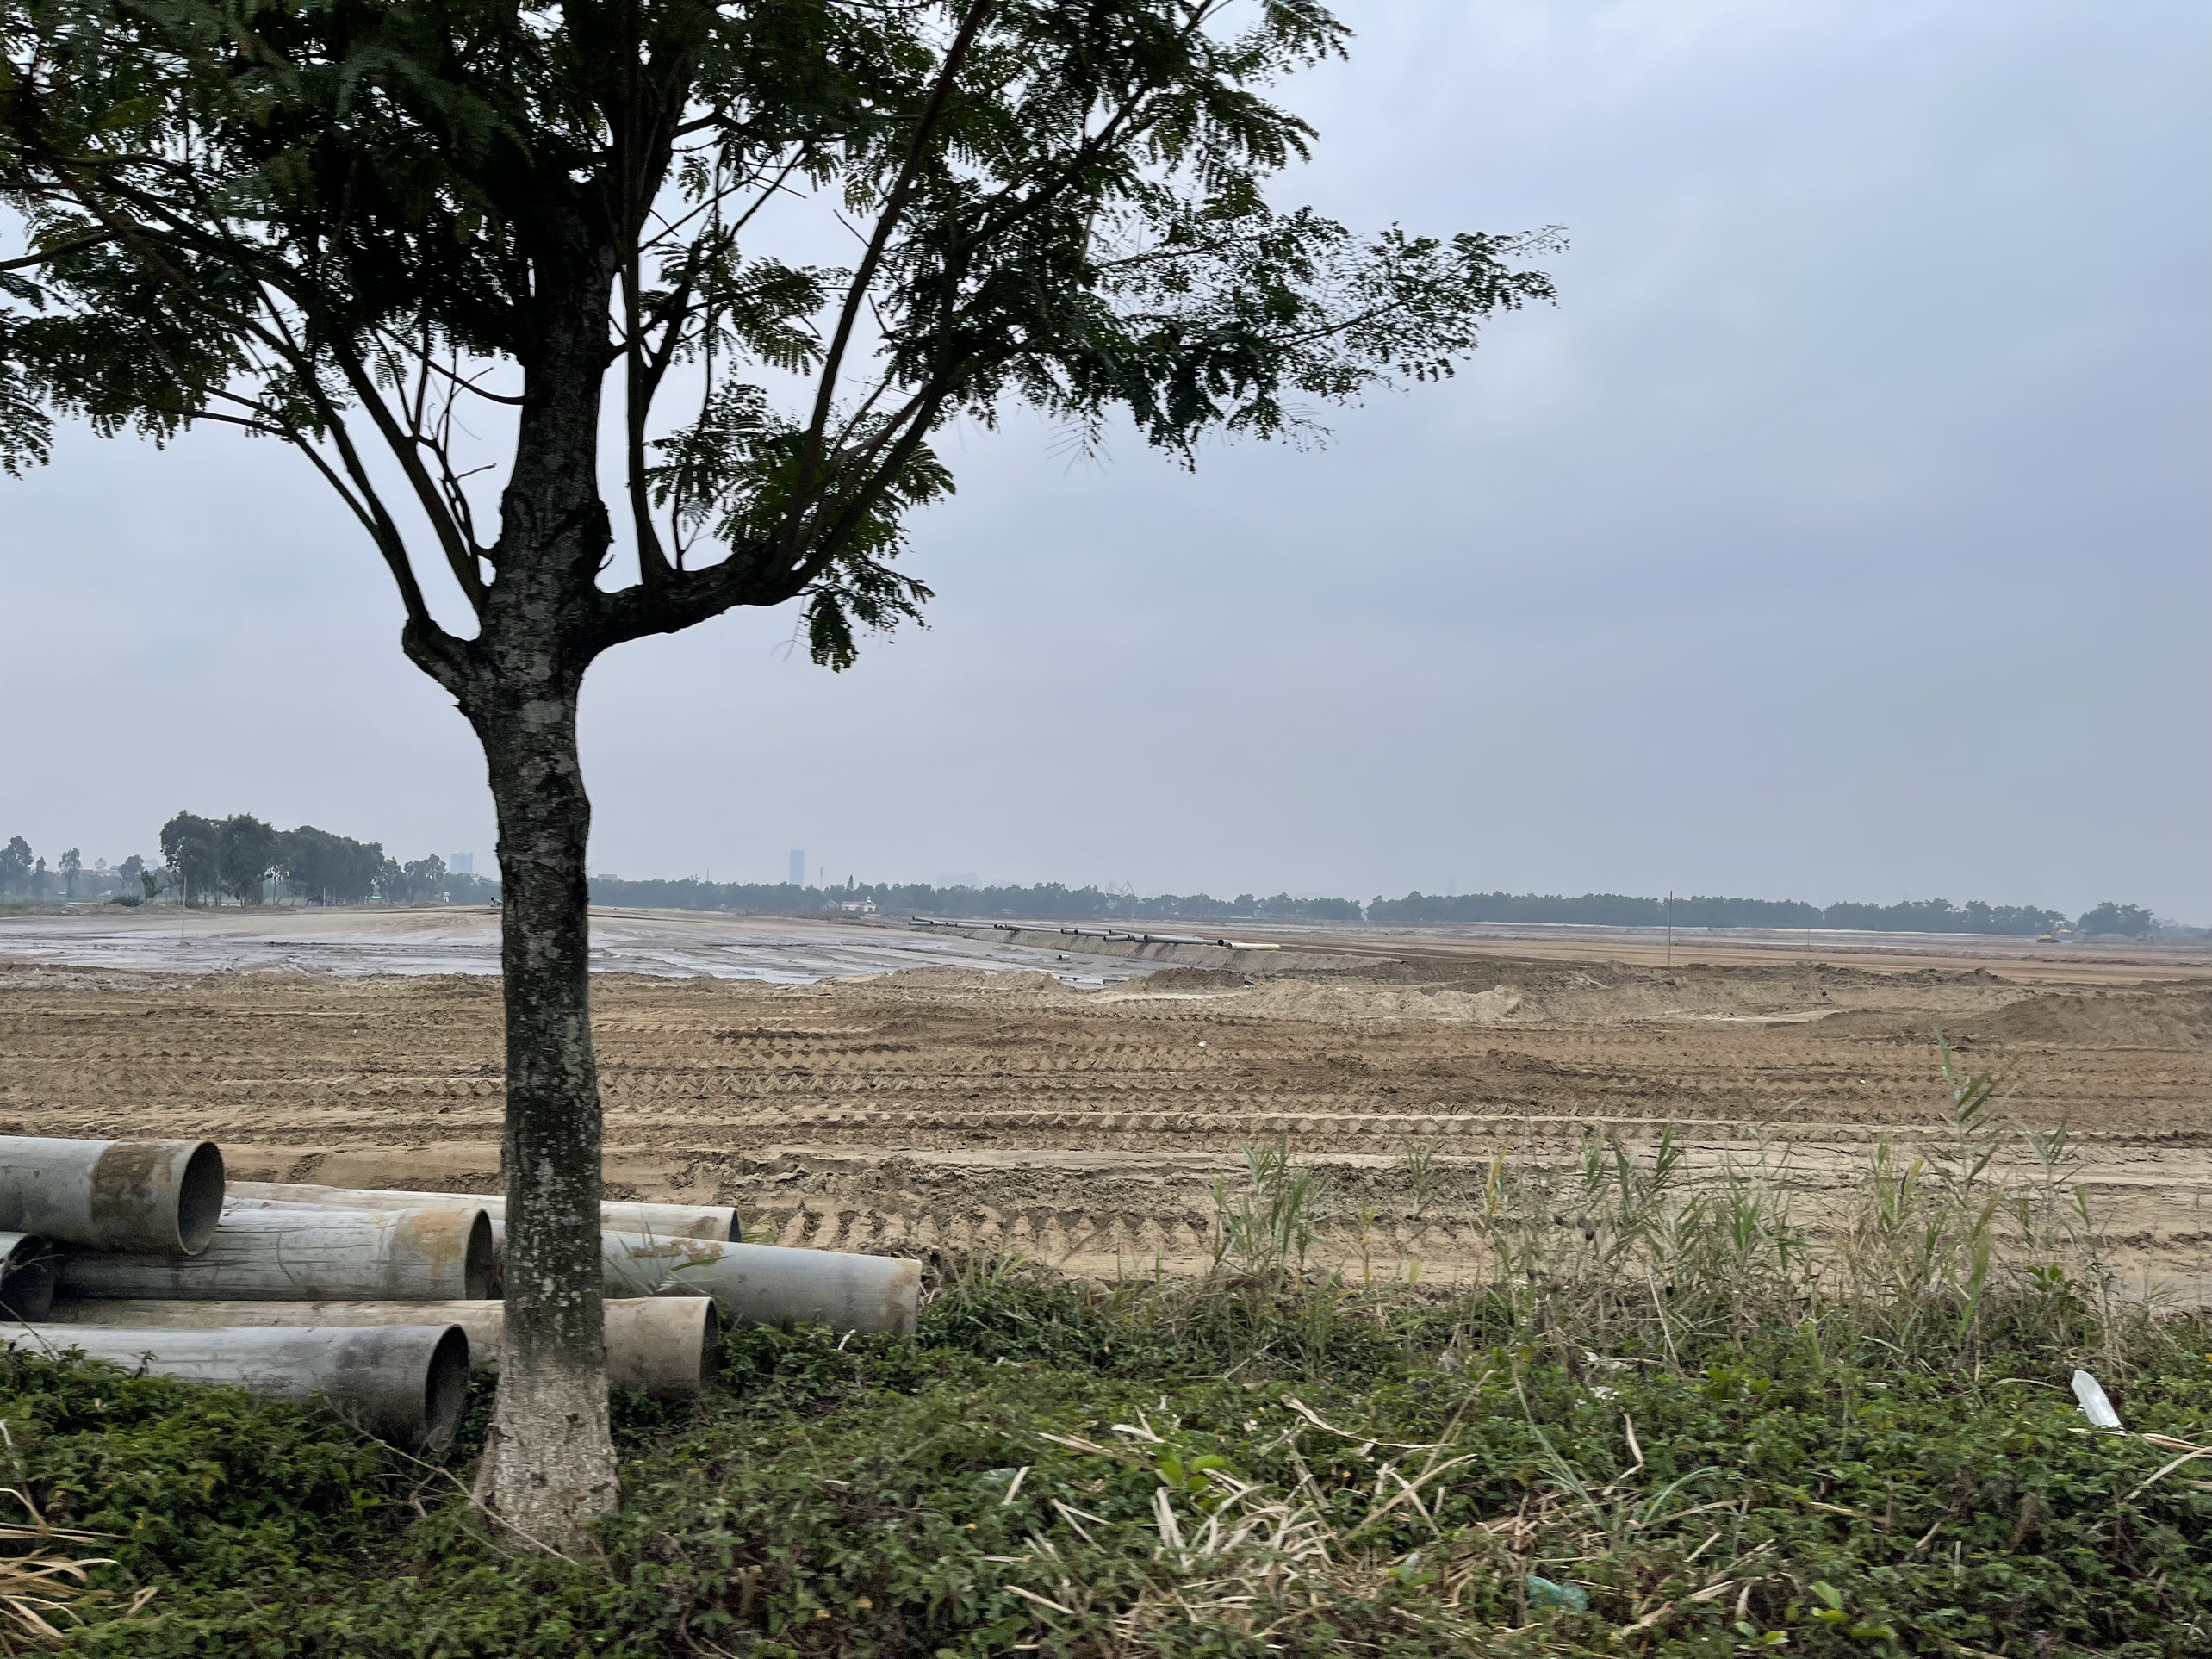 Dự án Vinhomes Vũ Yên tại đảo Vũ Yên đã thực hiện cơ bản việc san lấp mặt bằng